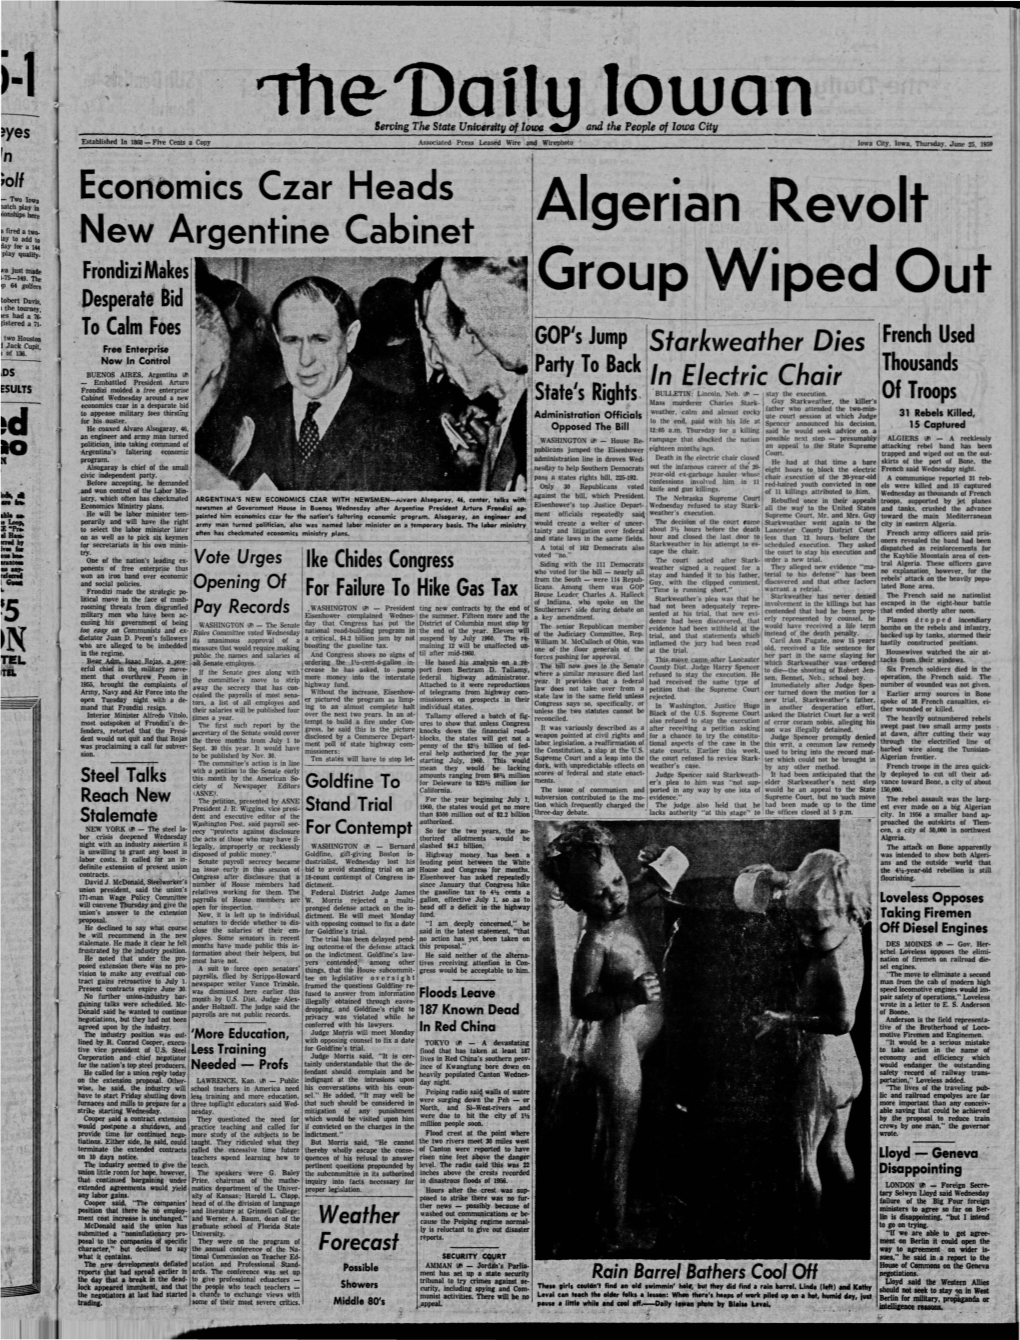 Daily Iowan (Iowa City, Iowa), 1959-06-25